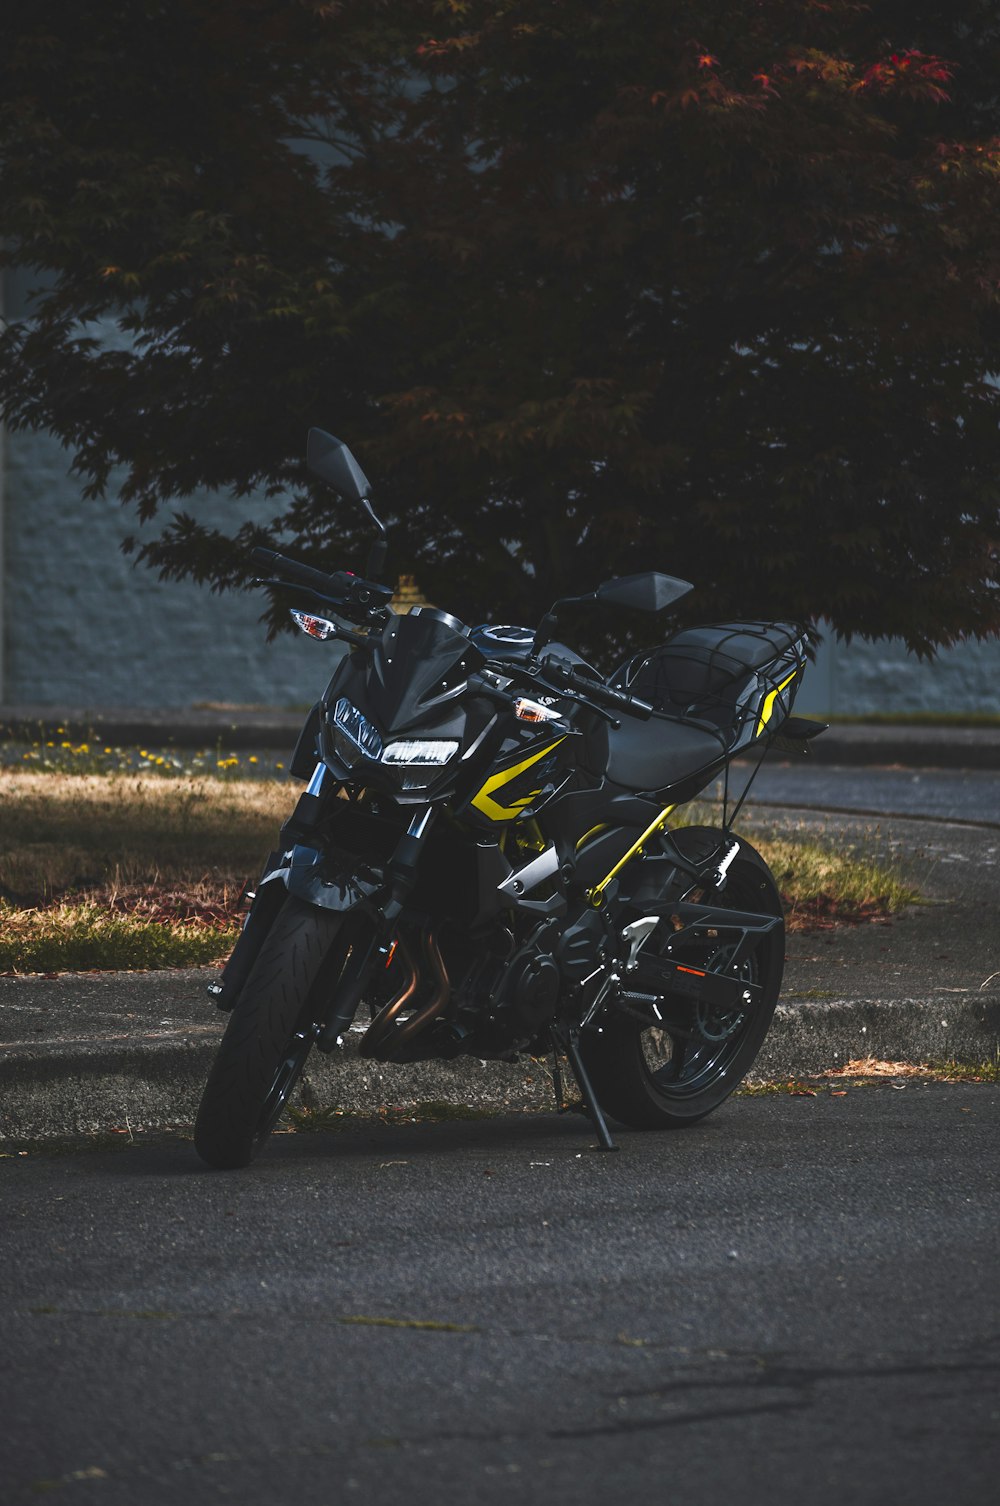 昼間の路上での黒と黄色のオートバイ